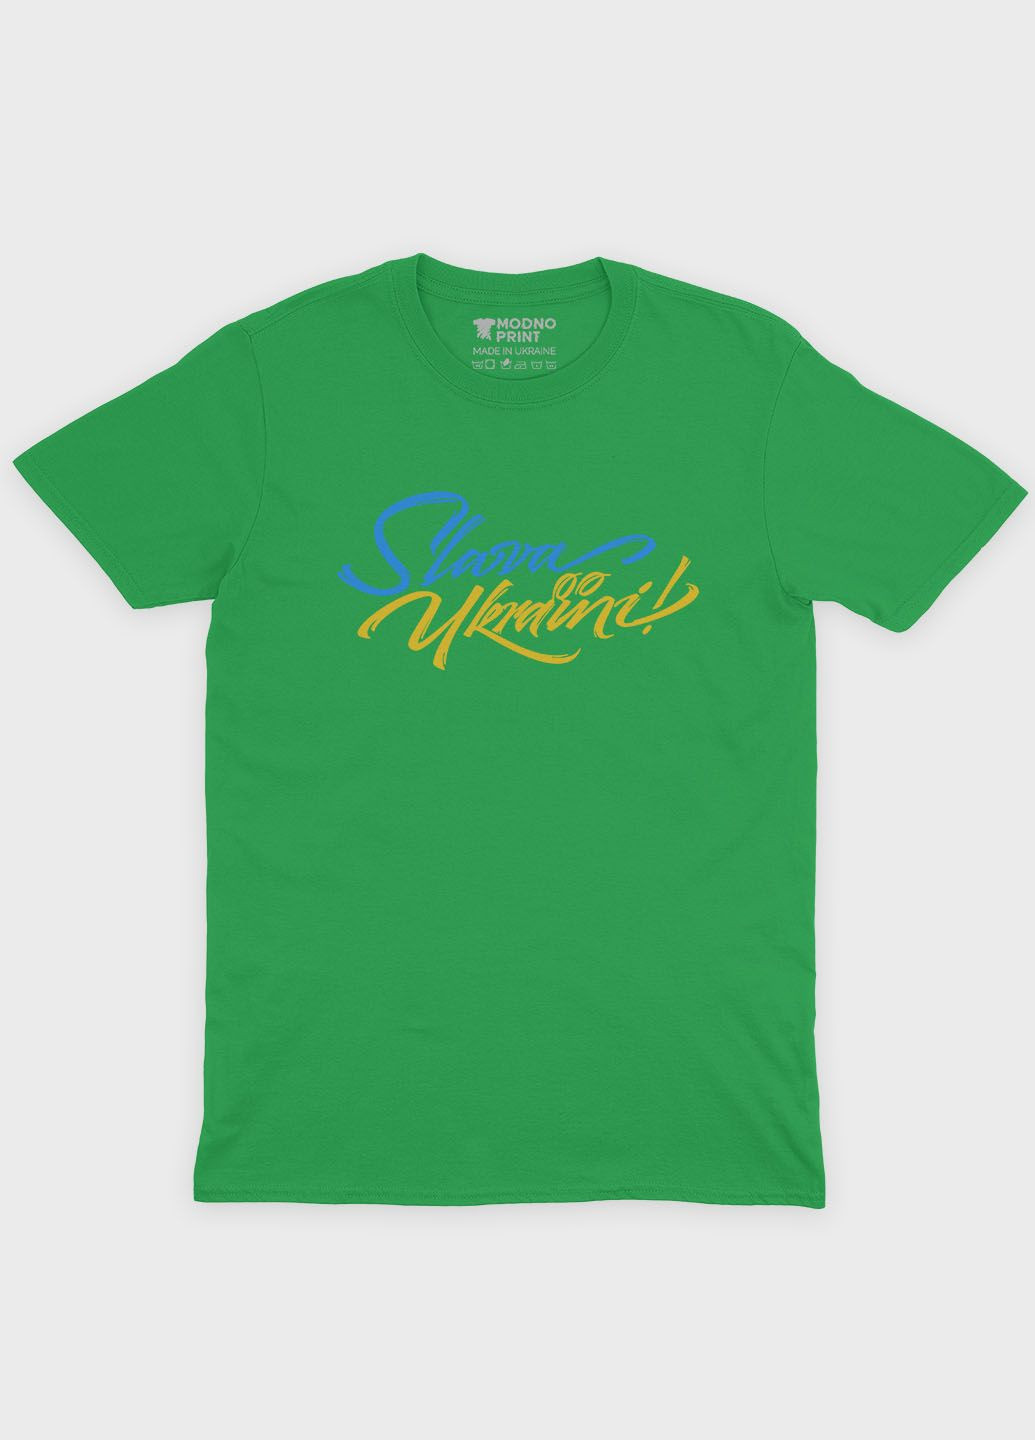 Зеленая демисезонная футболка для мальчика с патриотическим принтом слава україни (ts001-1-keg-005-1-014-b) Modno